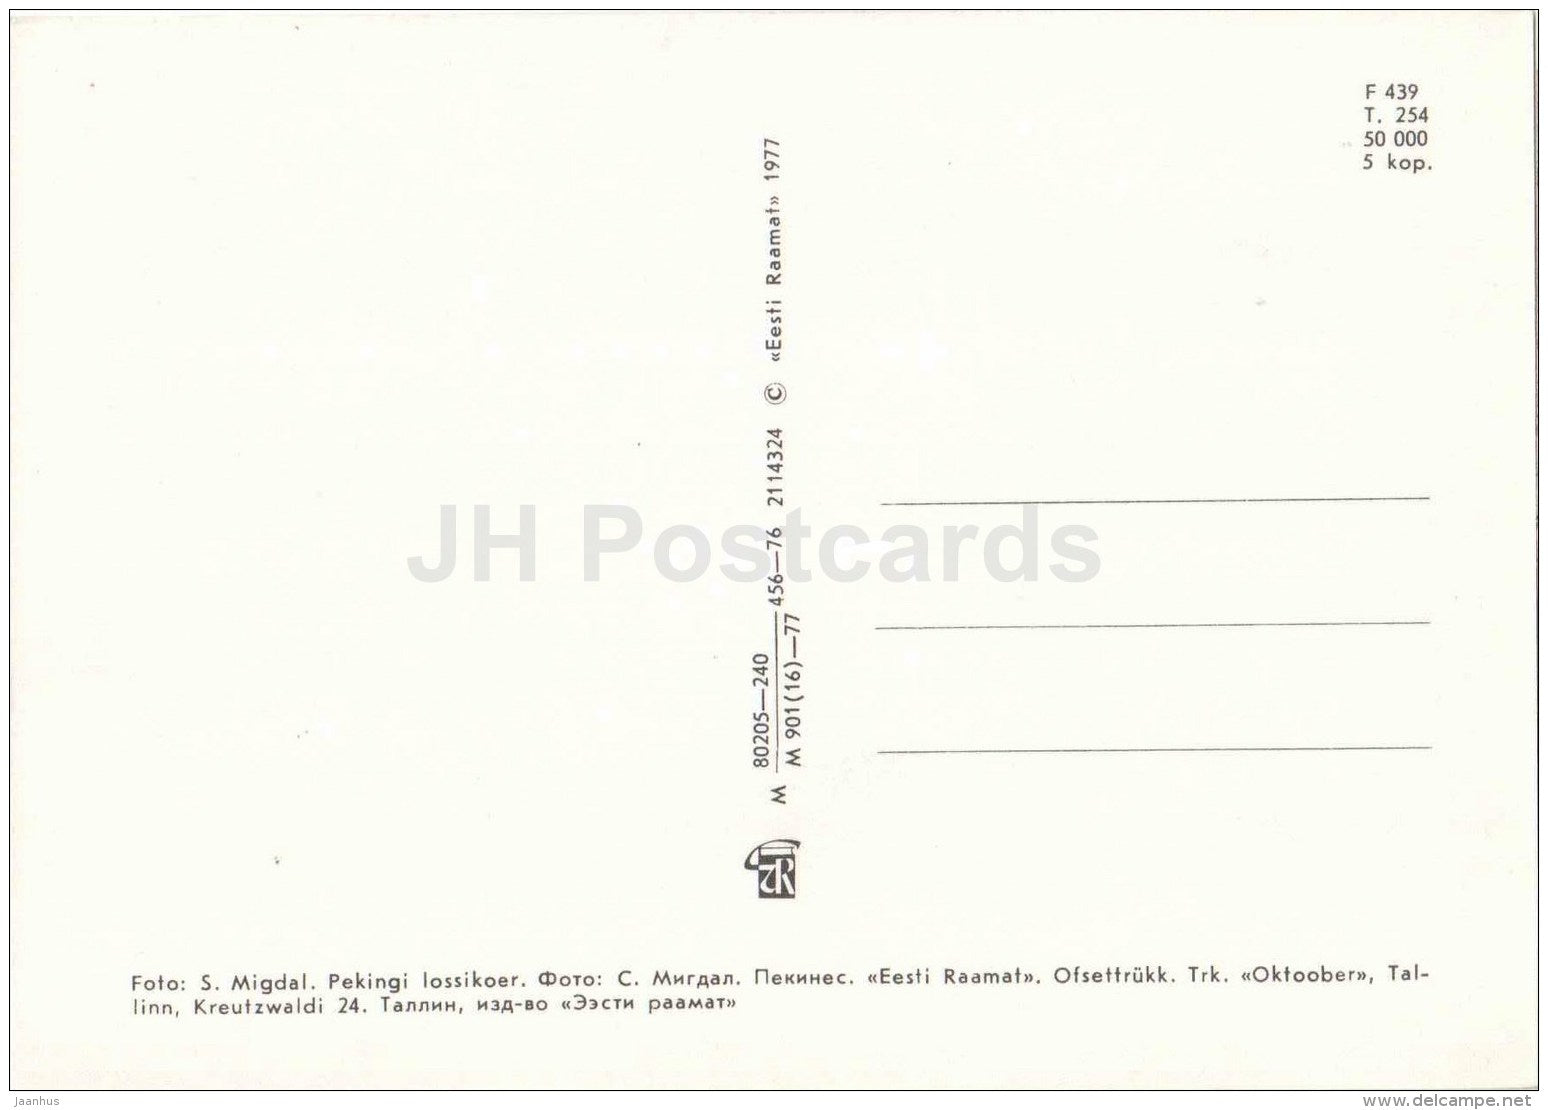 Pekingese - dog - 1977 - Estonia USSR - unused - JH Postcards